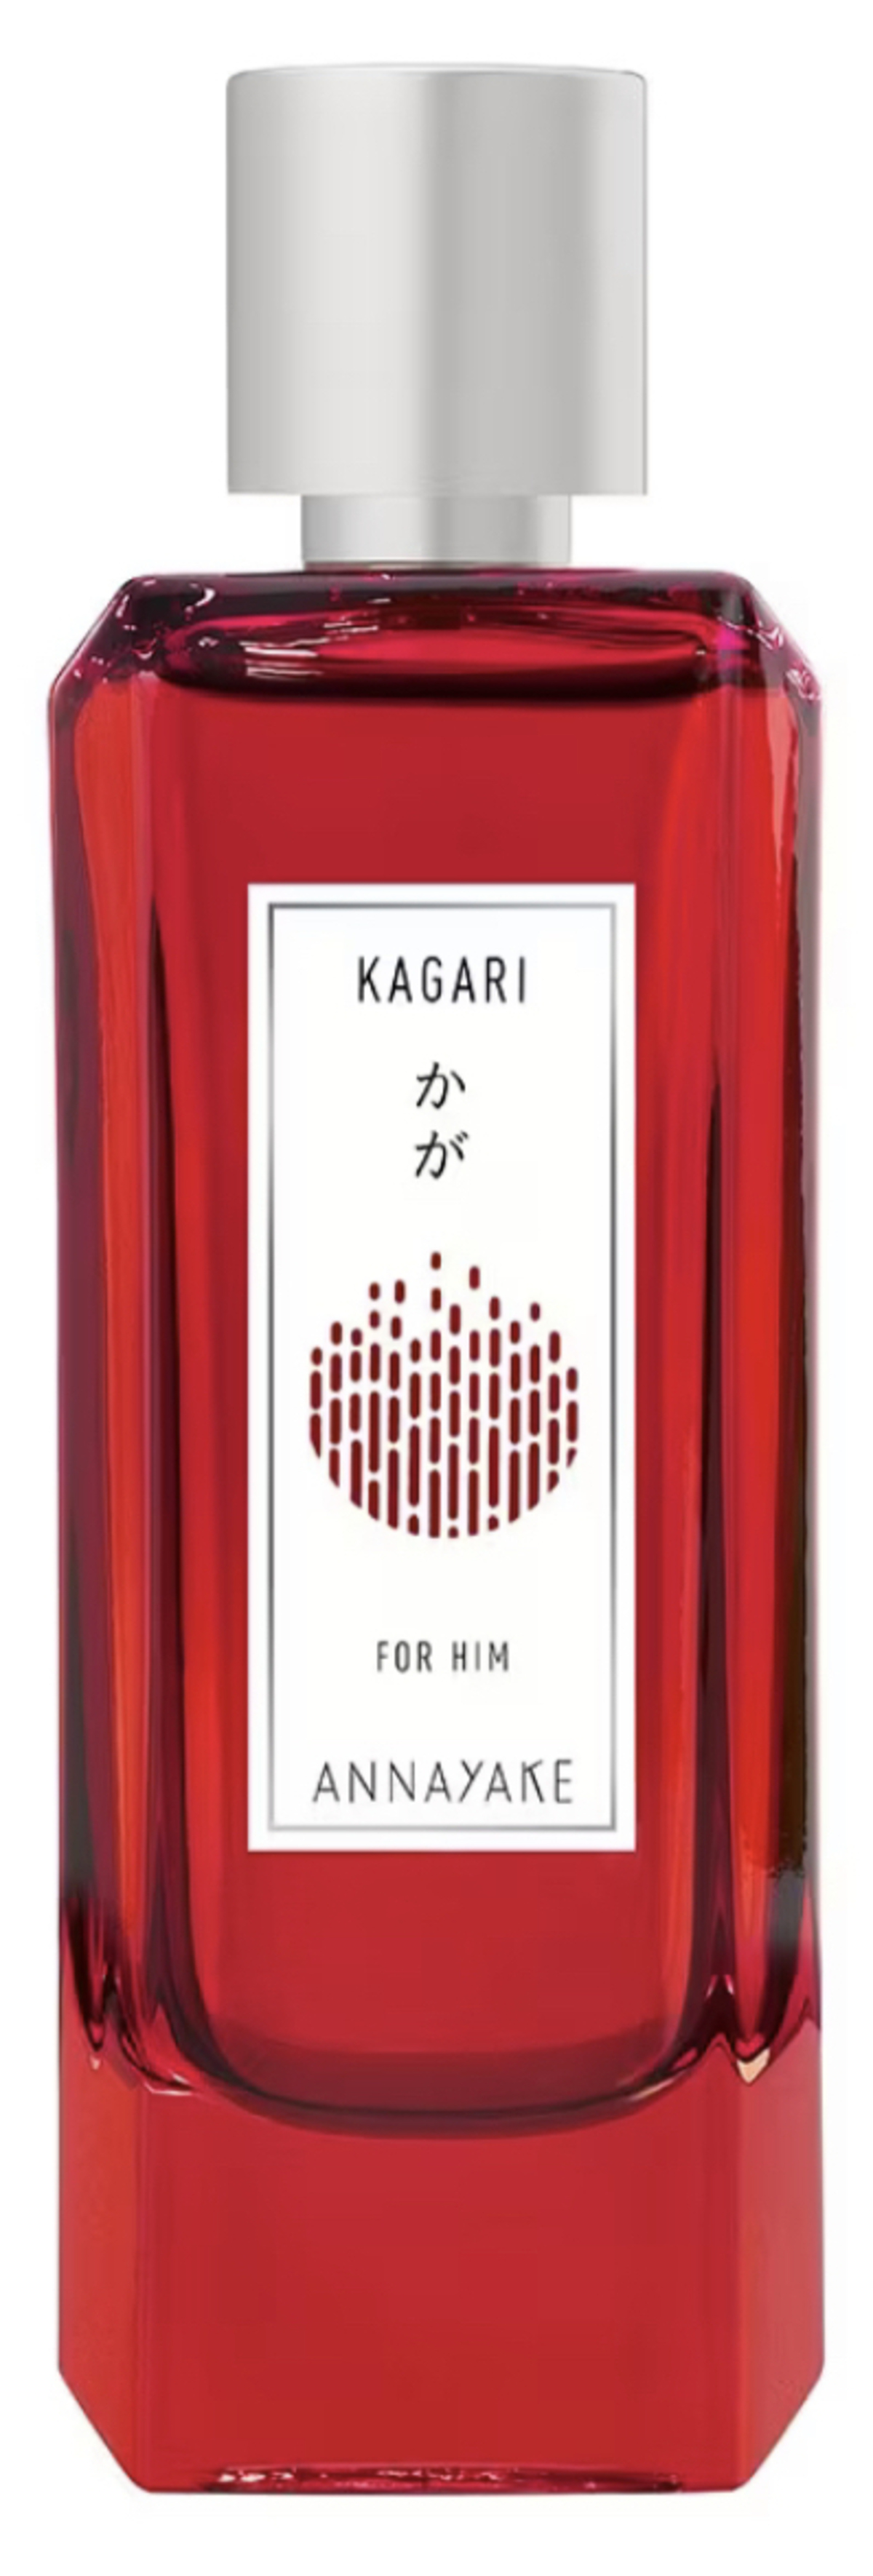 Kagari for Him (Annayake)